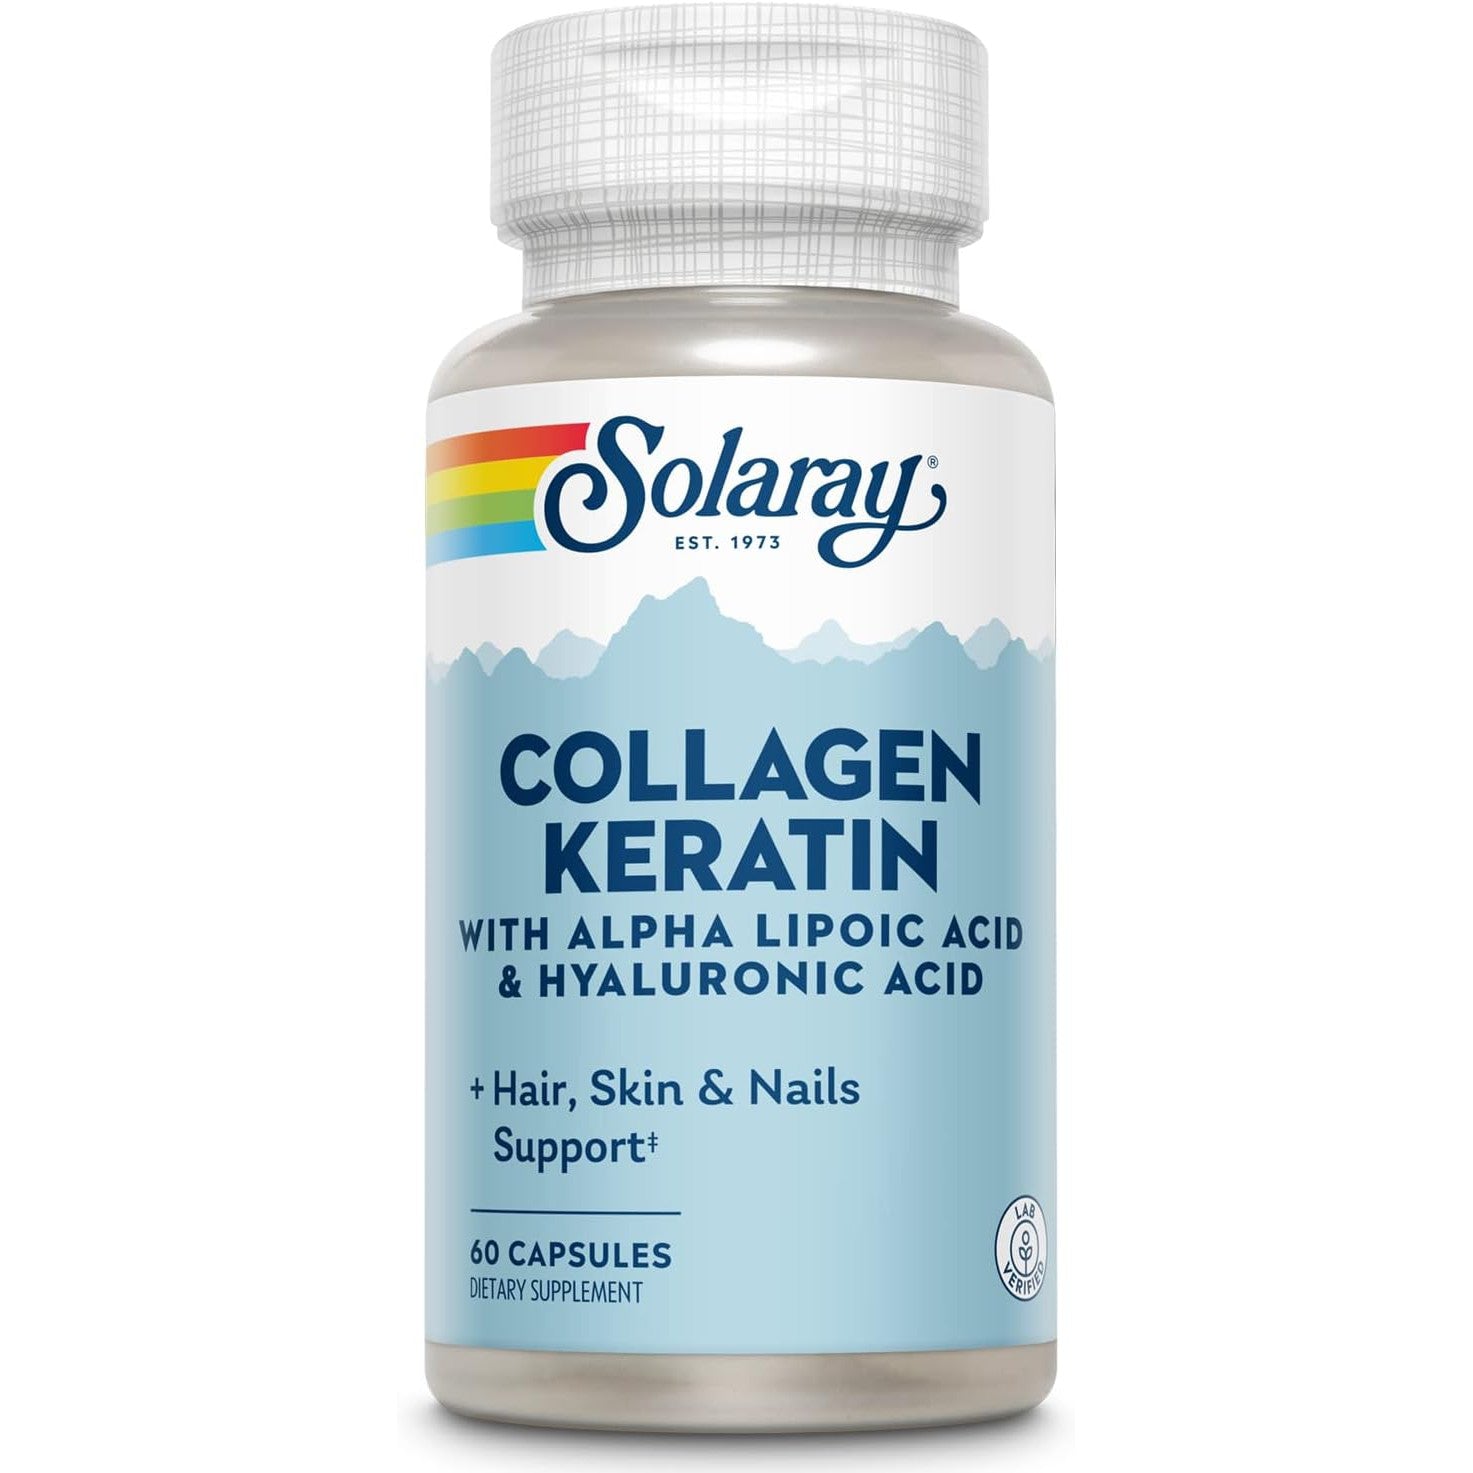 سولاراي كولاجين كيراتين كولاجين متعدد المصادر مع حمض ألفا ليبويك وحمض الهيالورونيك - كولاجين النوع الأول والثاني والثالث للشعر والبشرة والأظافر ودعم صحة المفاصل 60 كبسولة